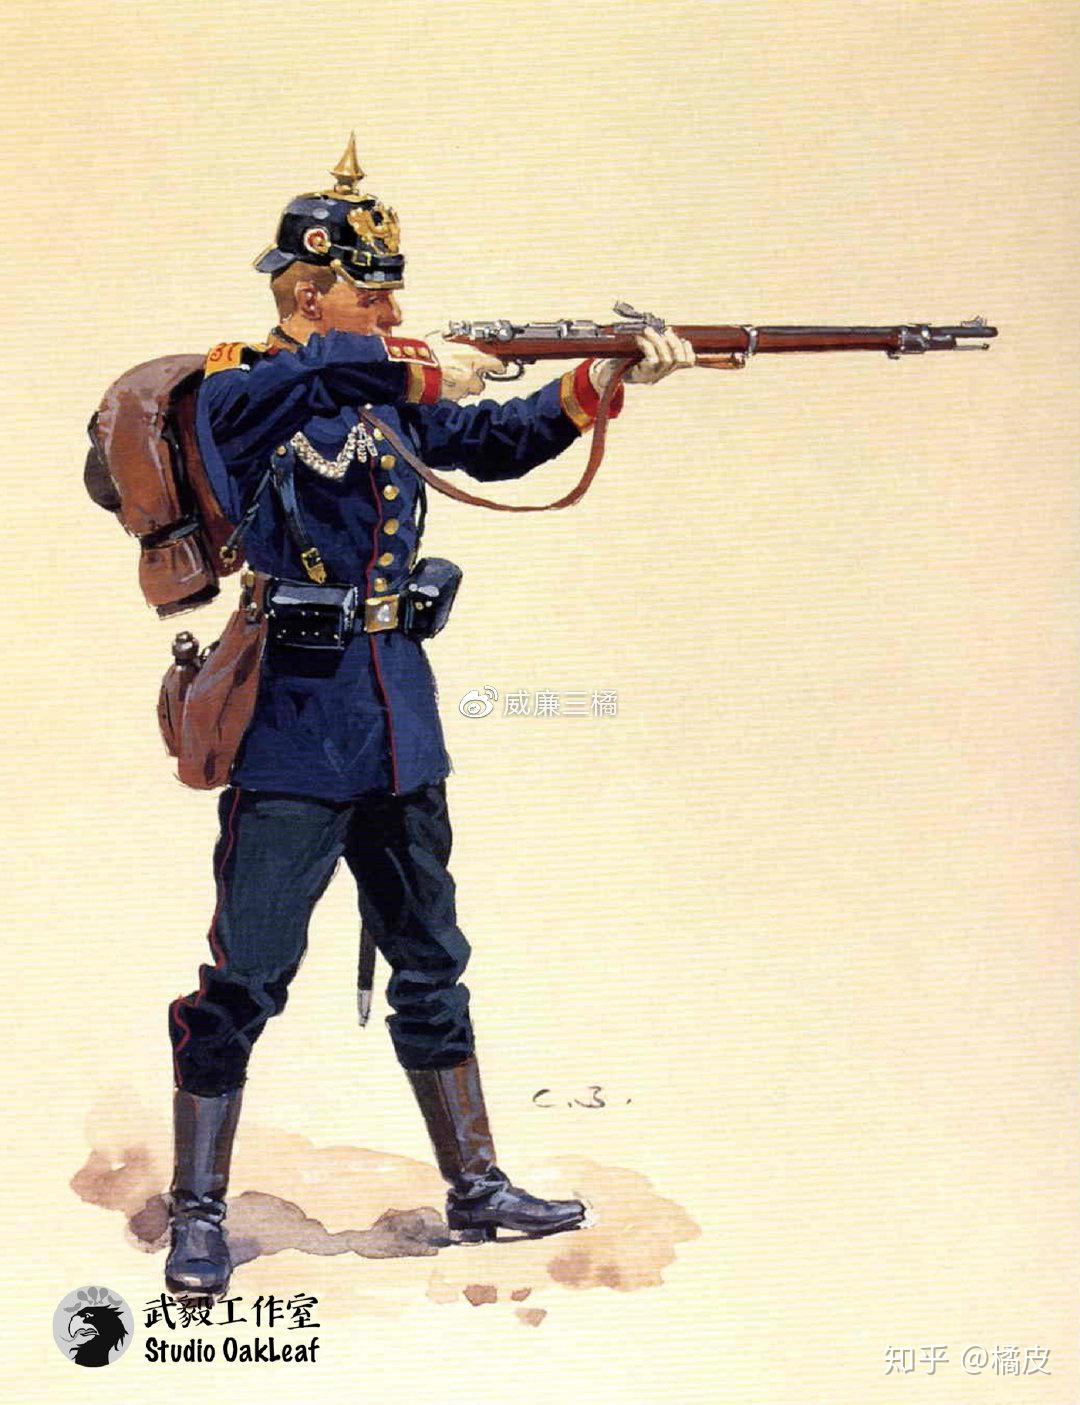 第37(西普鲁士)冯·斯坦梅茨燧发枪团下士注释:该团建于1818年